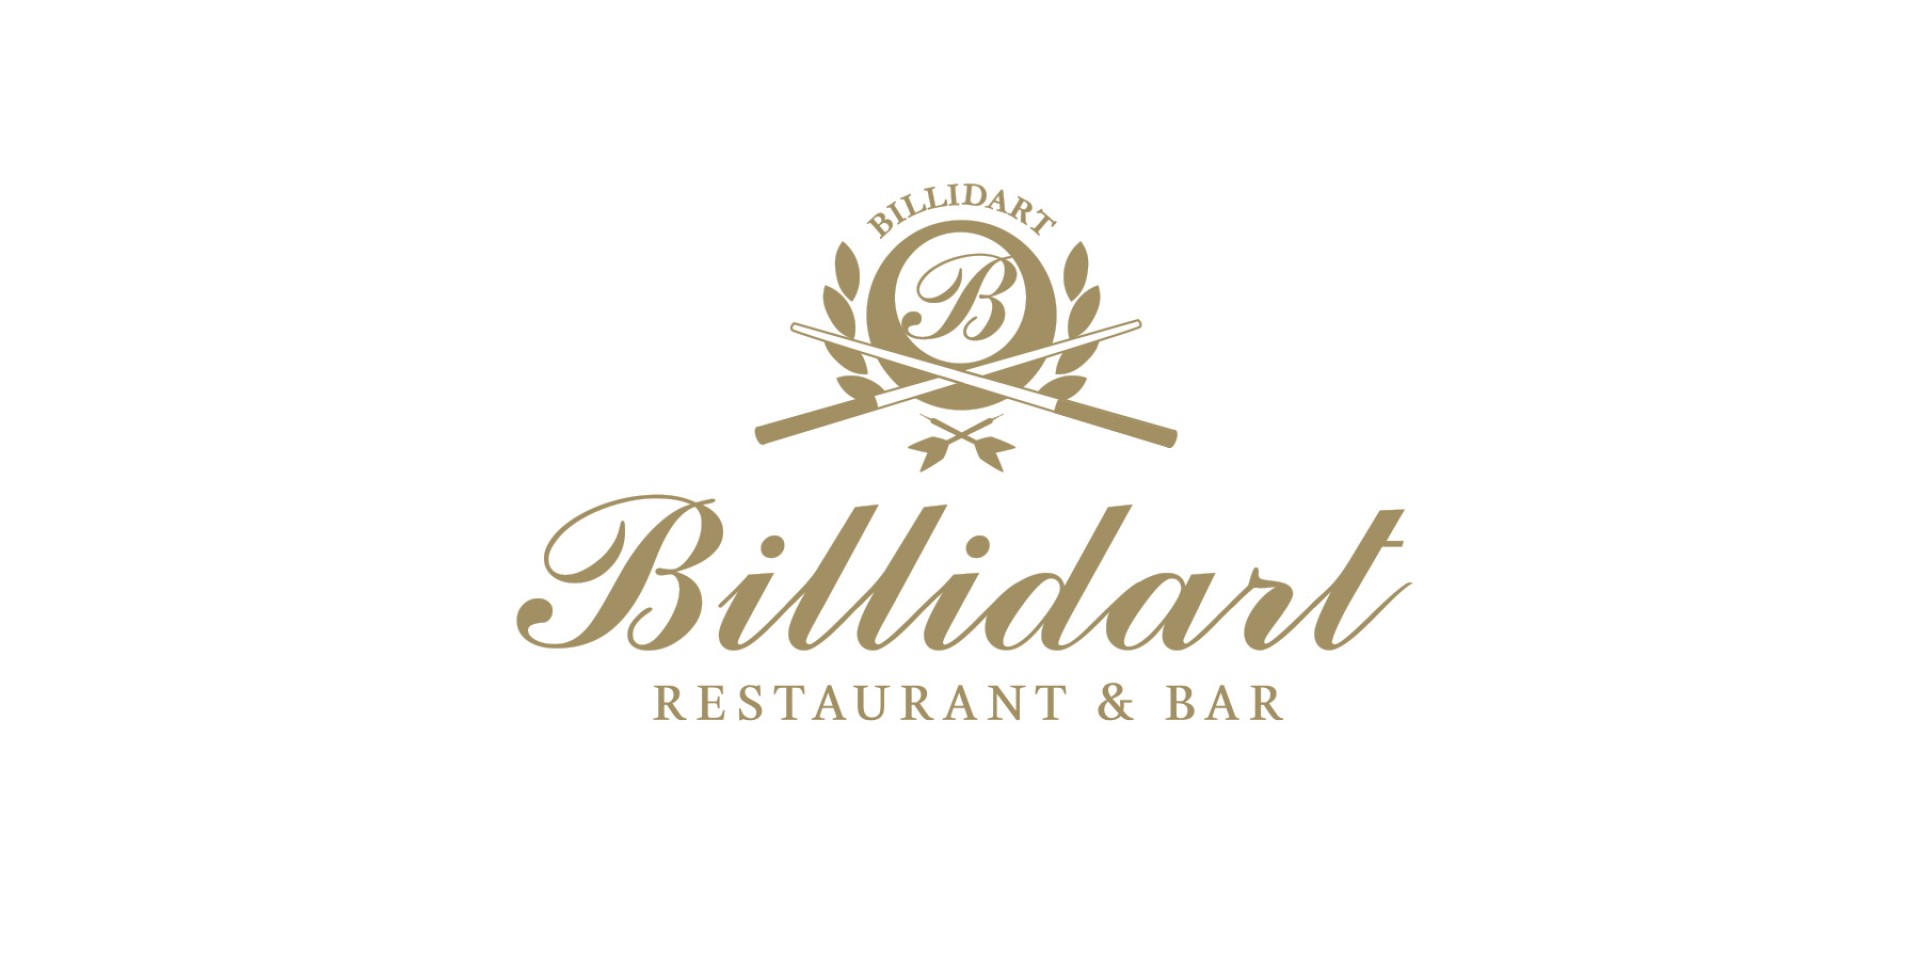 Billidart Restaurant & Bar Branding, Logo, Business card, Website Design